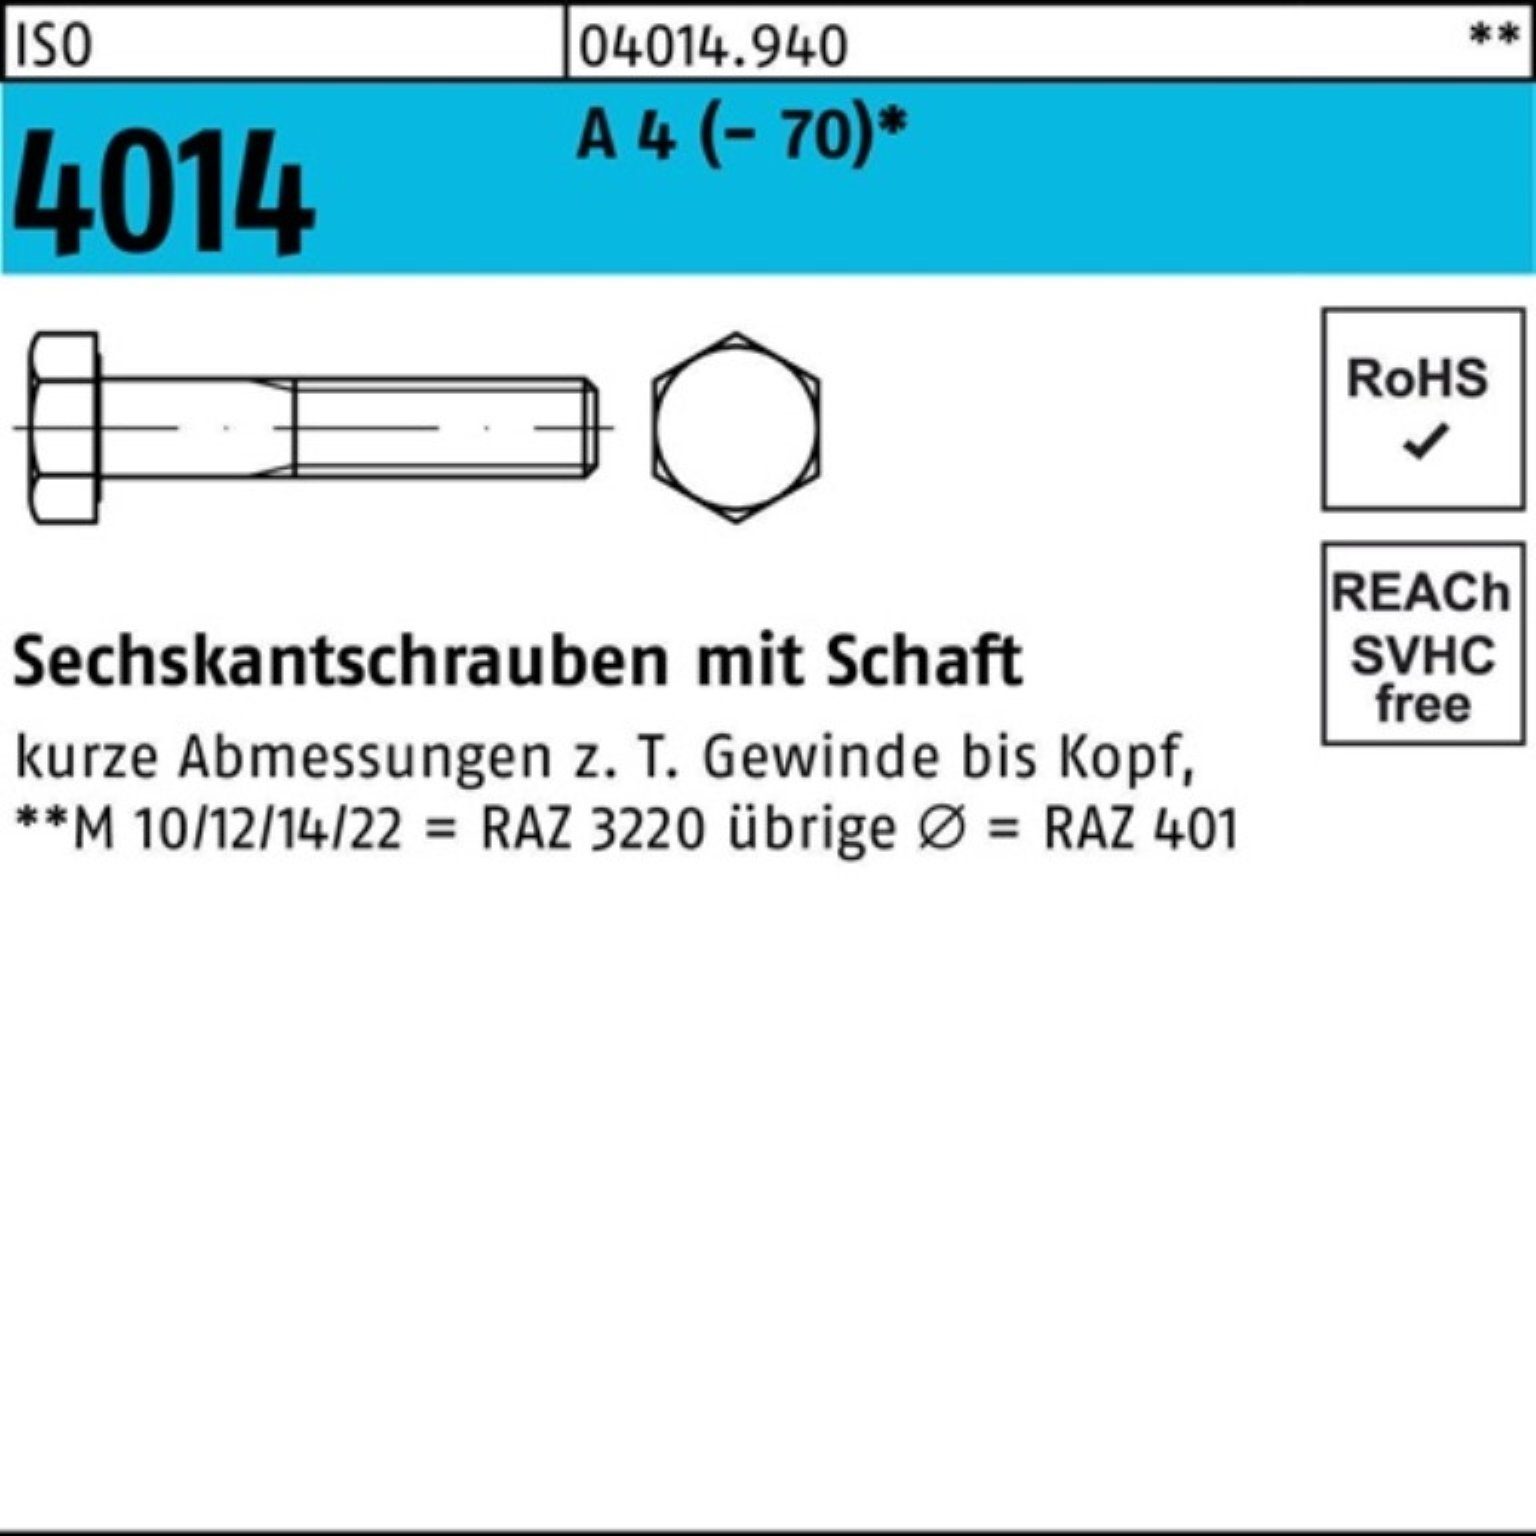 Bufab Sechskantschraube 100er Pack ISO Stück Sechskantschraube Schaft ISO M27x A 4 1 4014 180